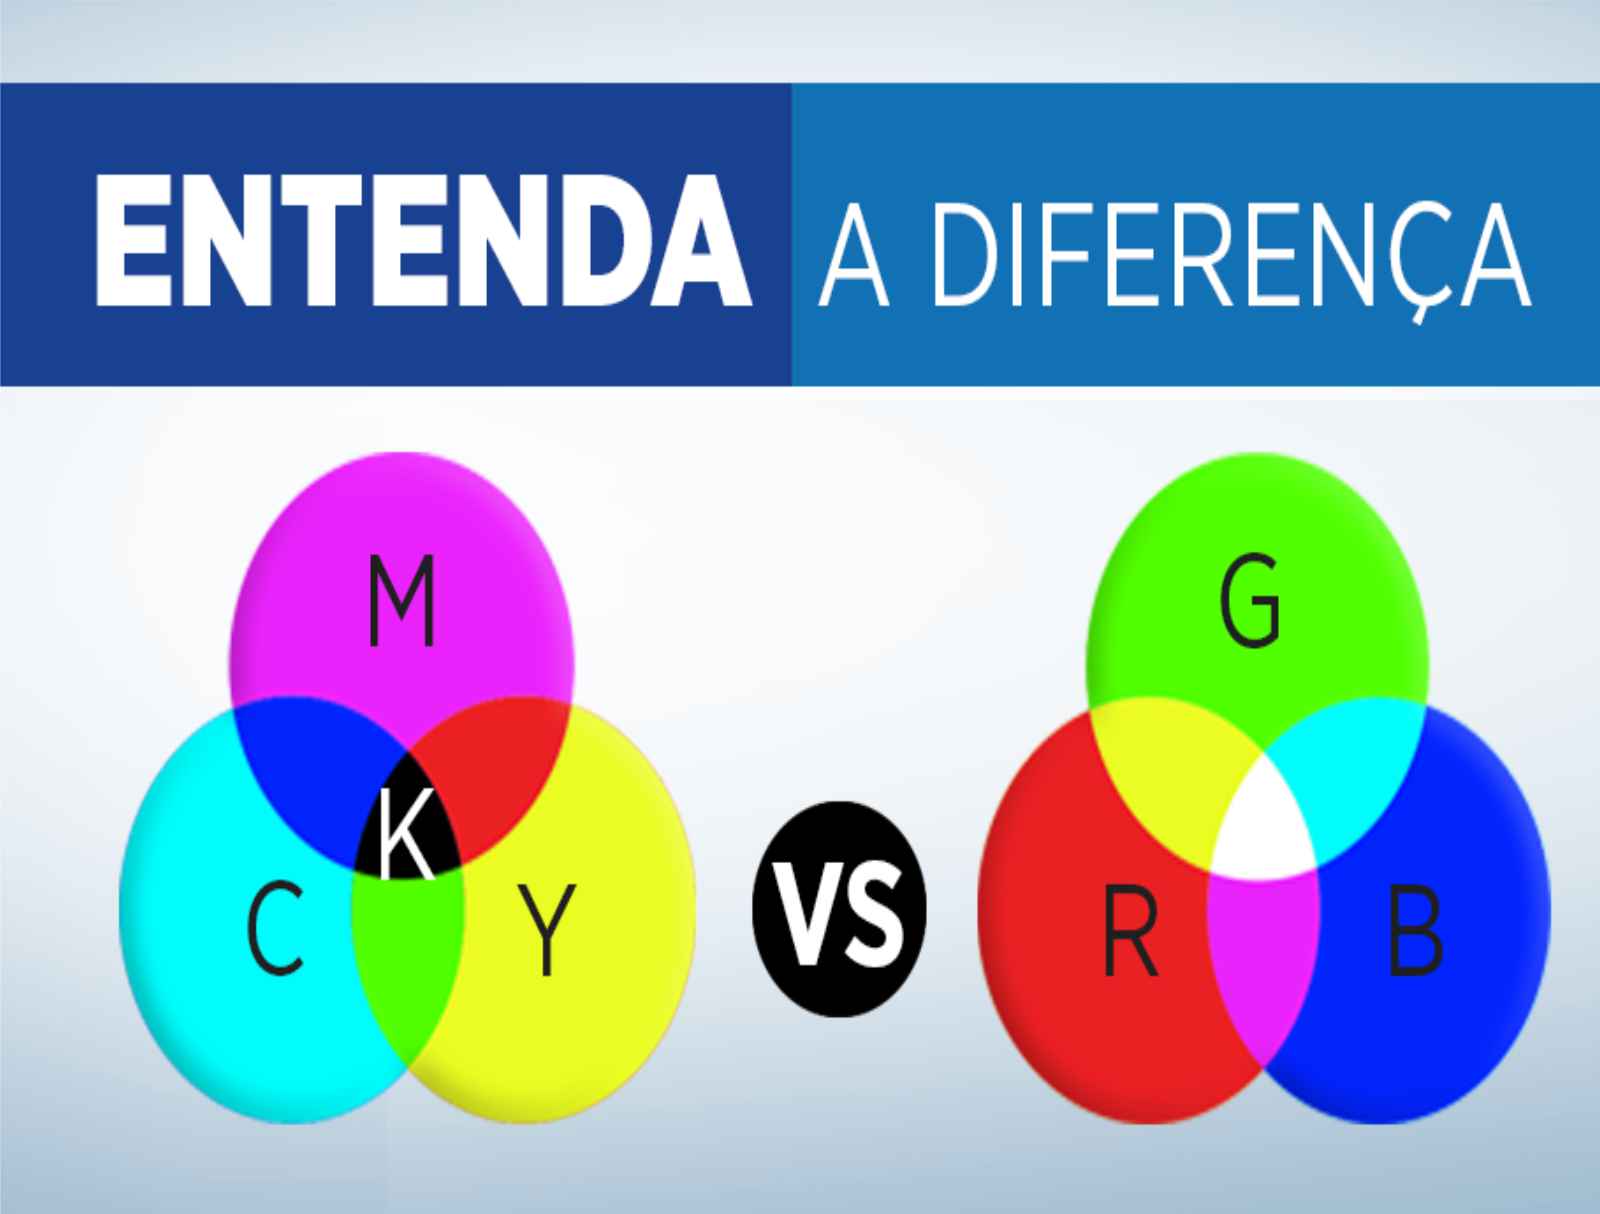 CMYK e RGB: Diferença entre os dois padrões de cores